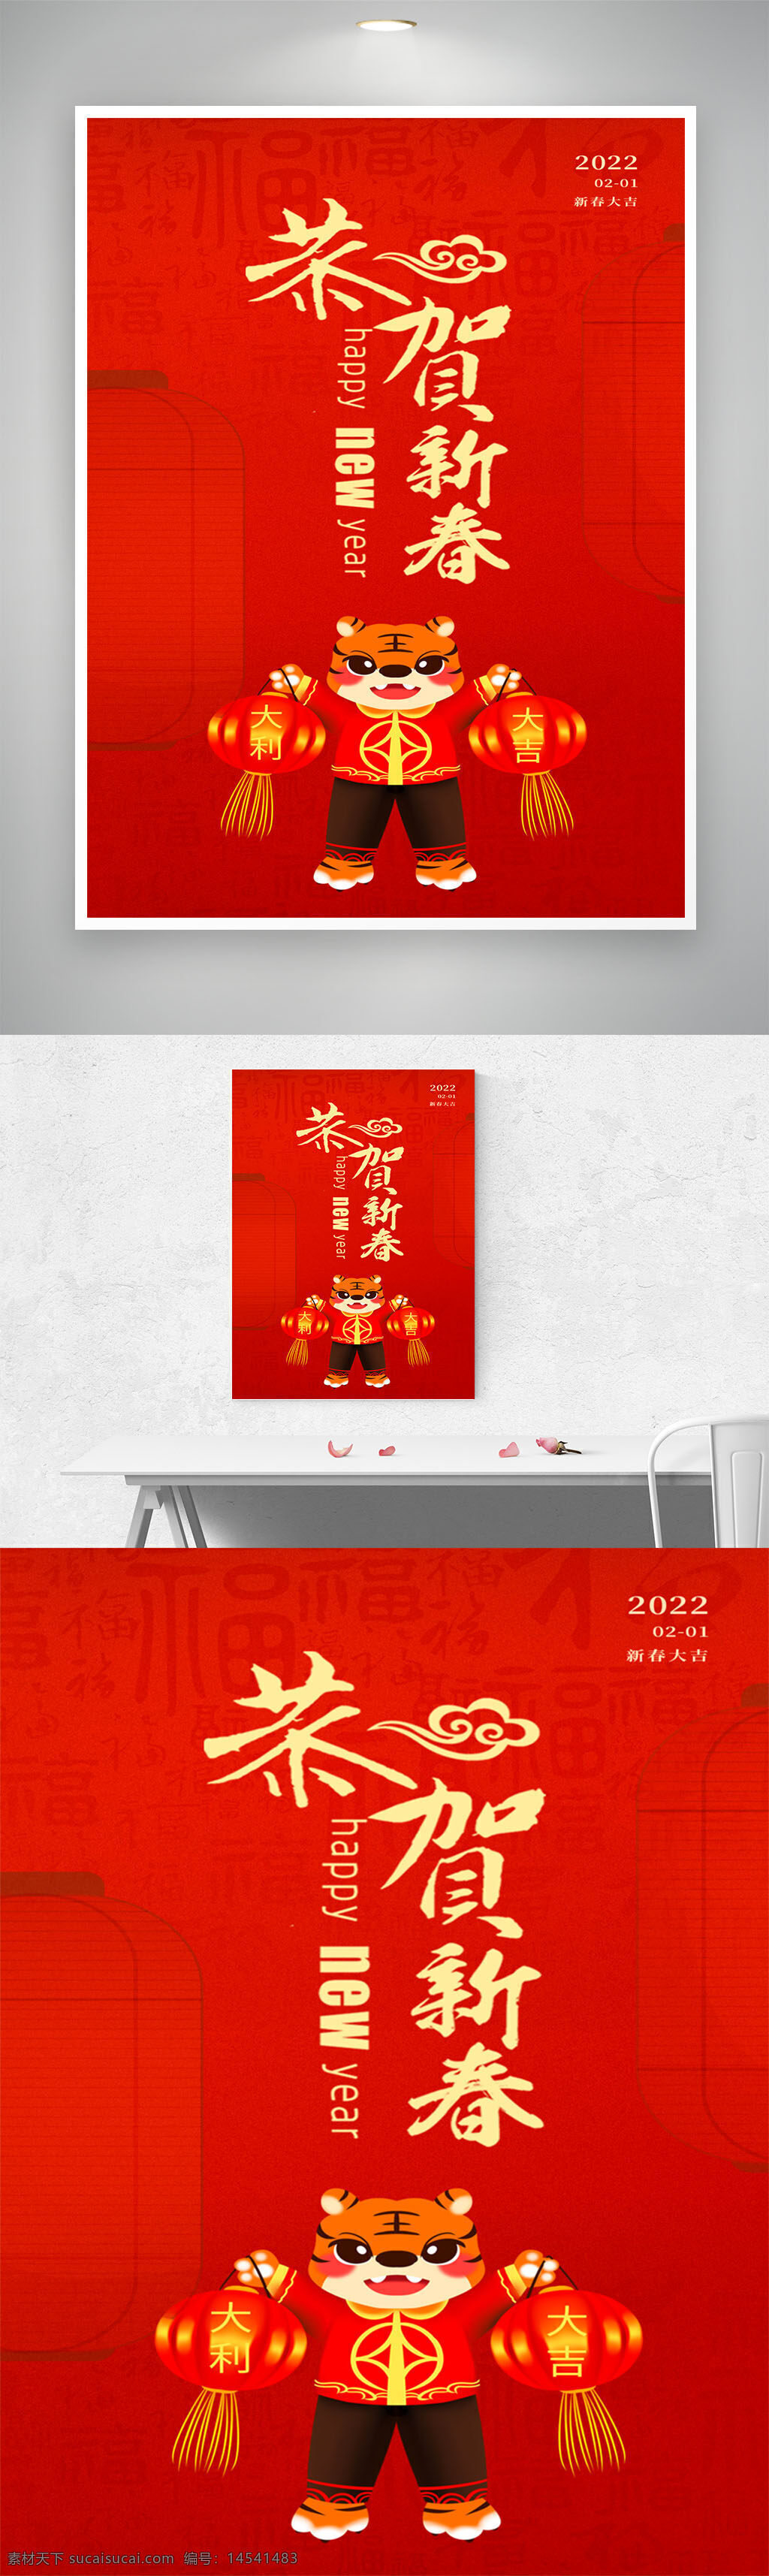 2022海报 2022年春节 春节海报 新年 虎年大吉 新年快乐